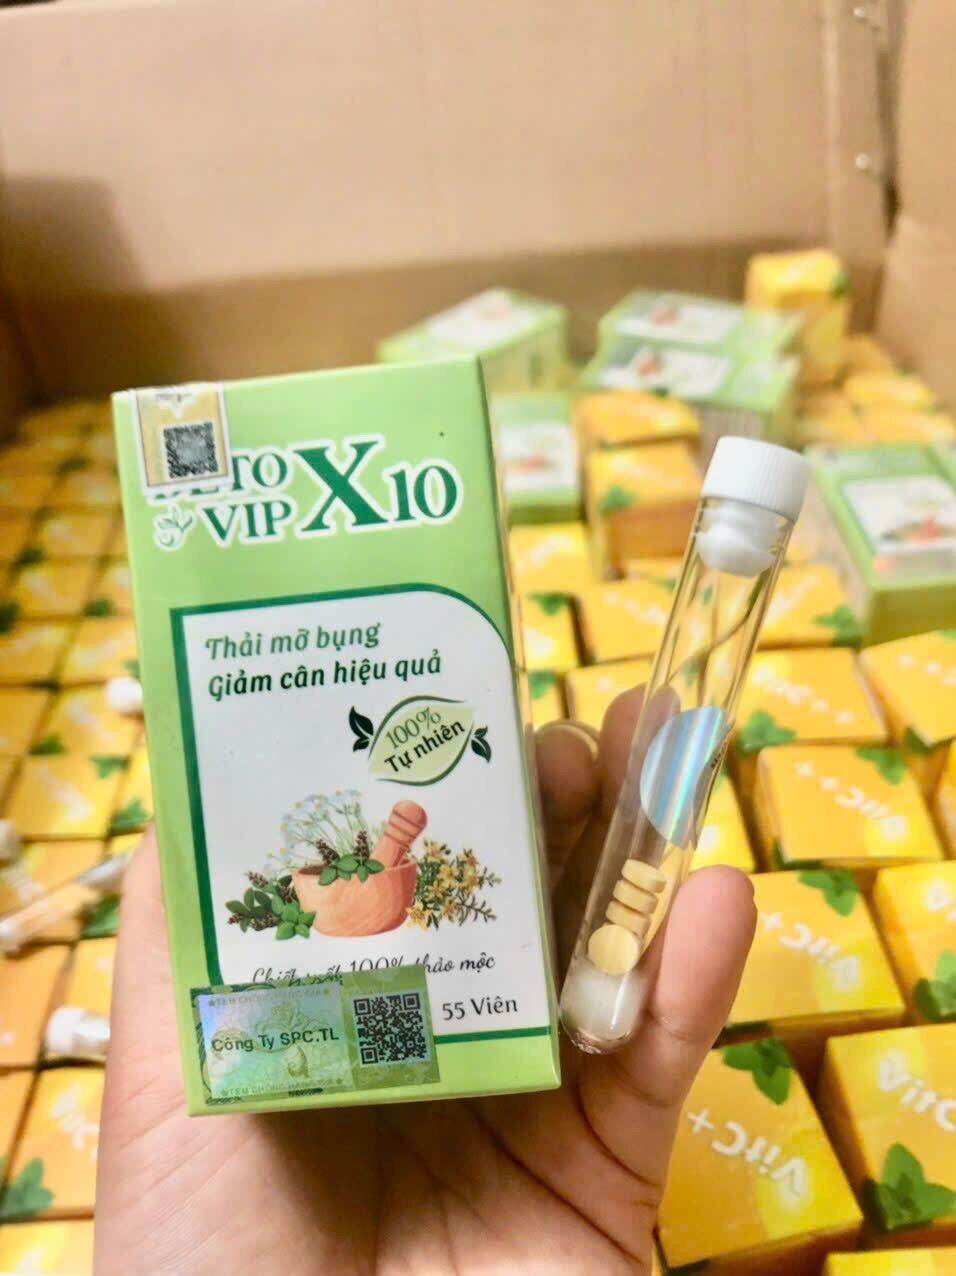 KÈM ỐNG SIẾT EO Detox X10 siết eo thải mỡ hộp 55 viên